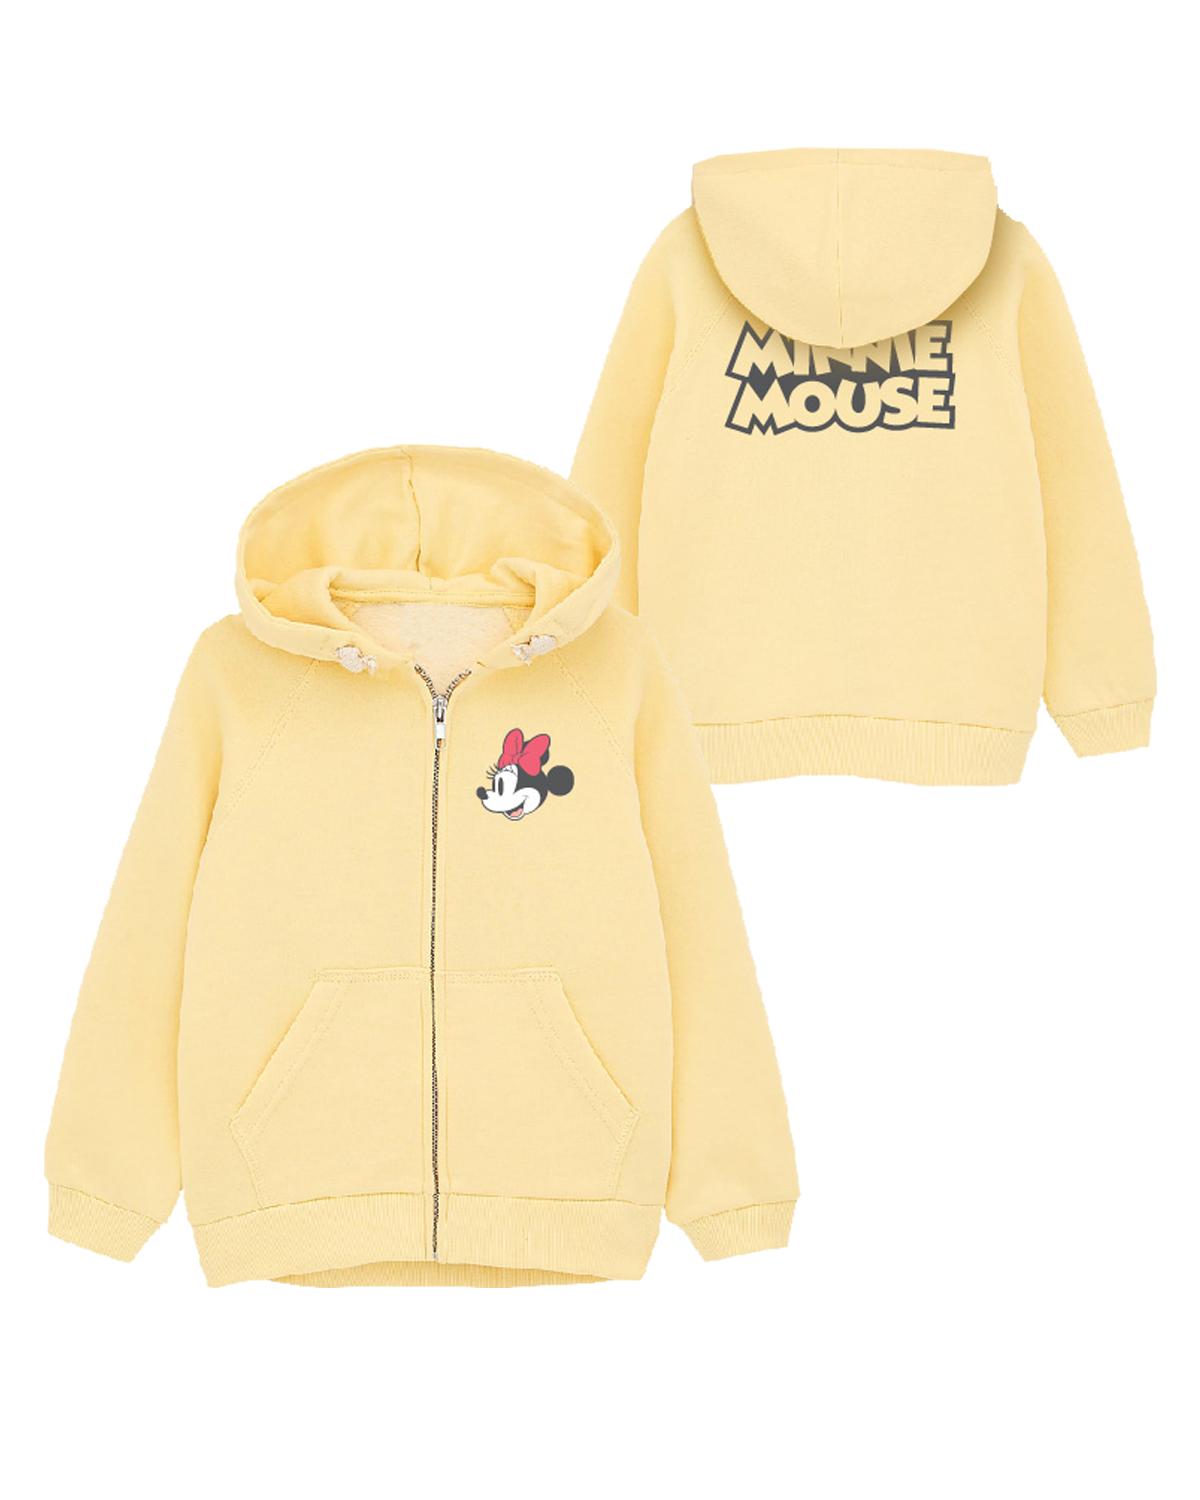 Minnie Mouse - licence Dívčí mikina - Minnie Mouse 52187834, žlutá Barva: Žlutá, Velikost: 104